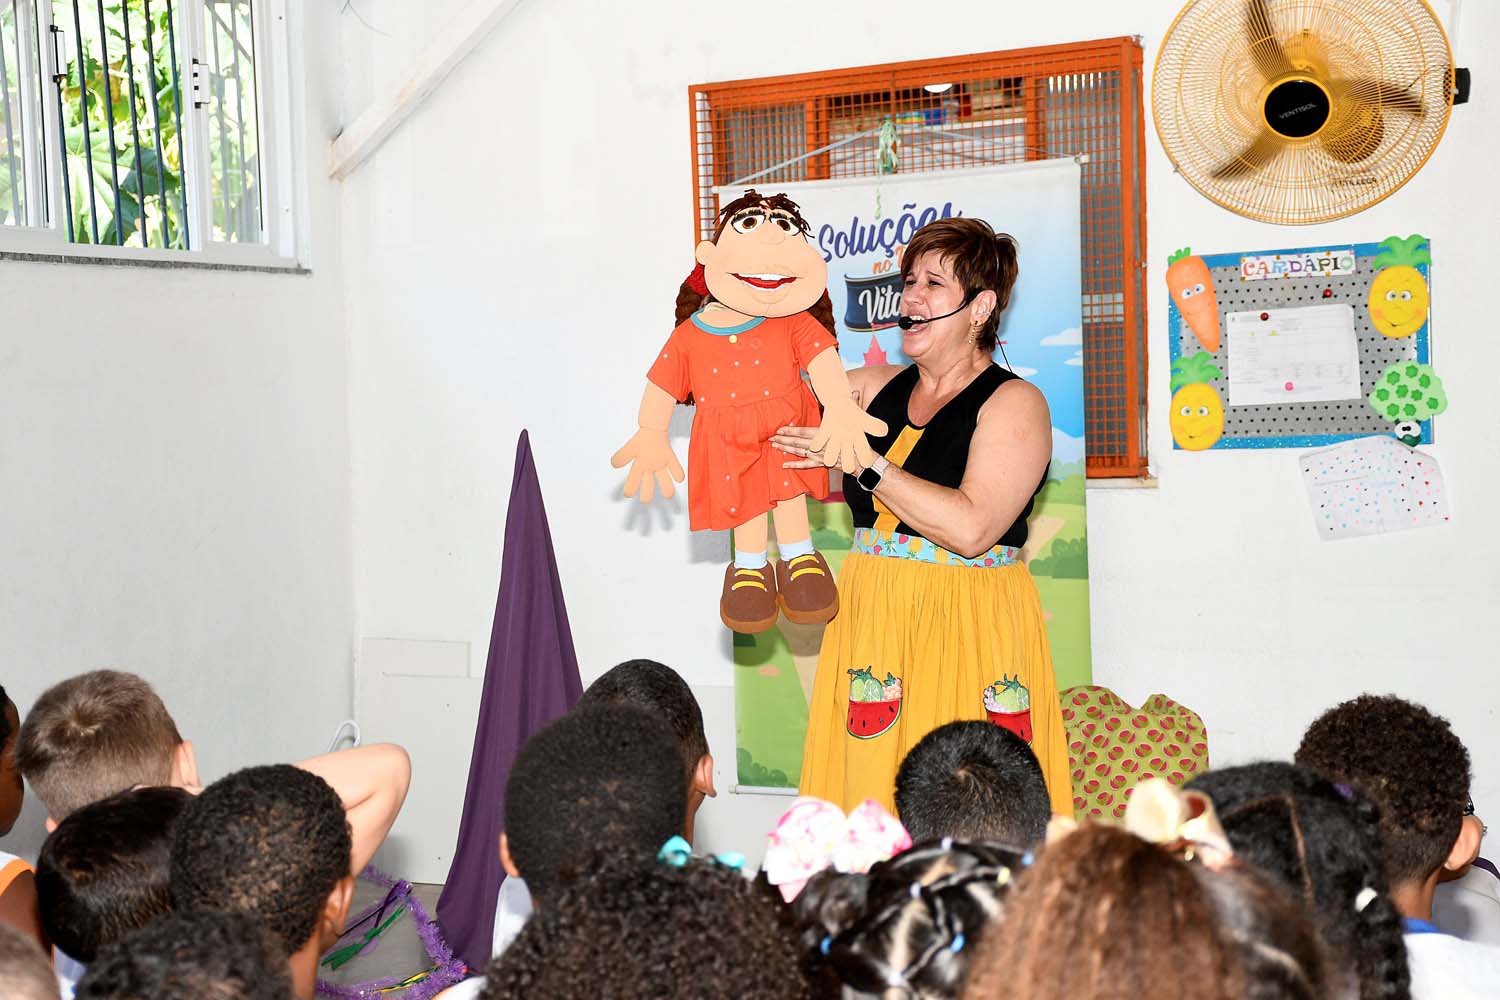 Teatro educativo leva alegria e aprendizado para os alunos de Nova Iguaçu